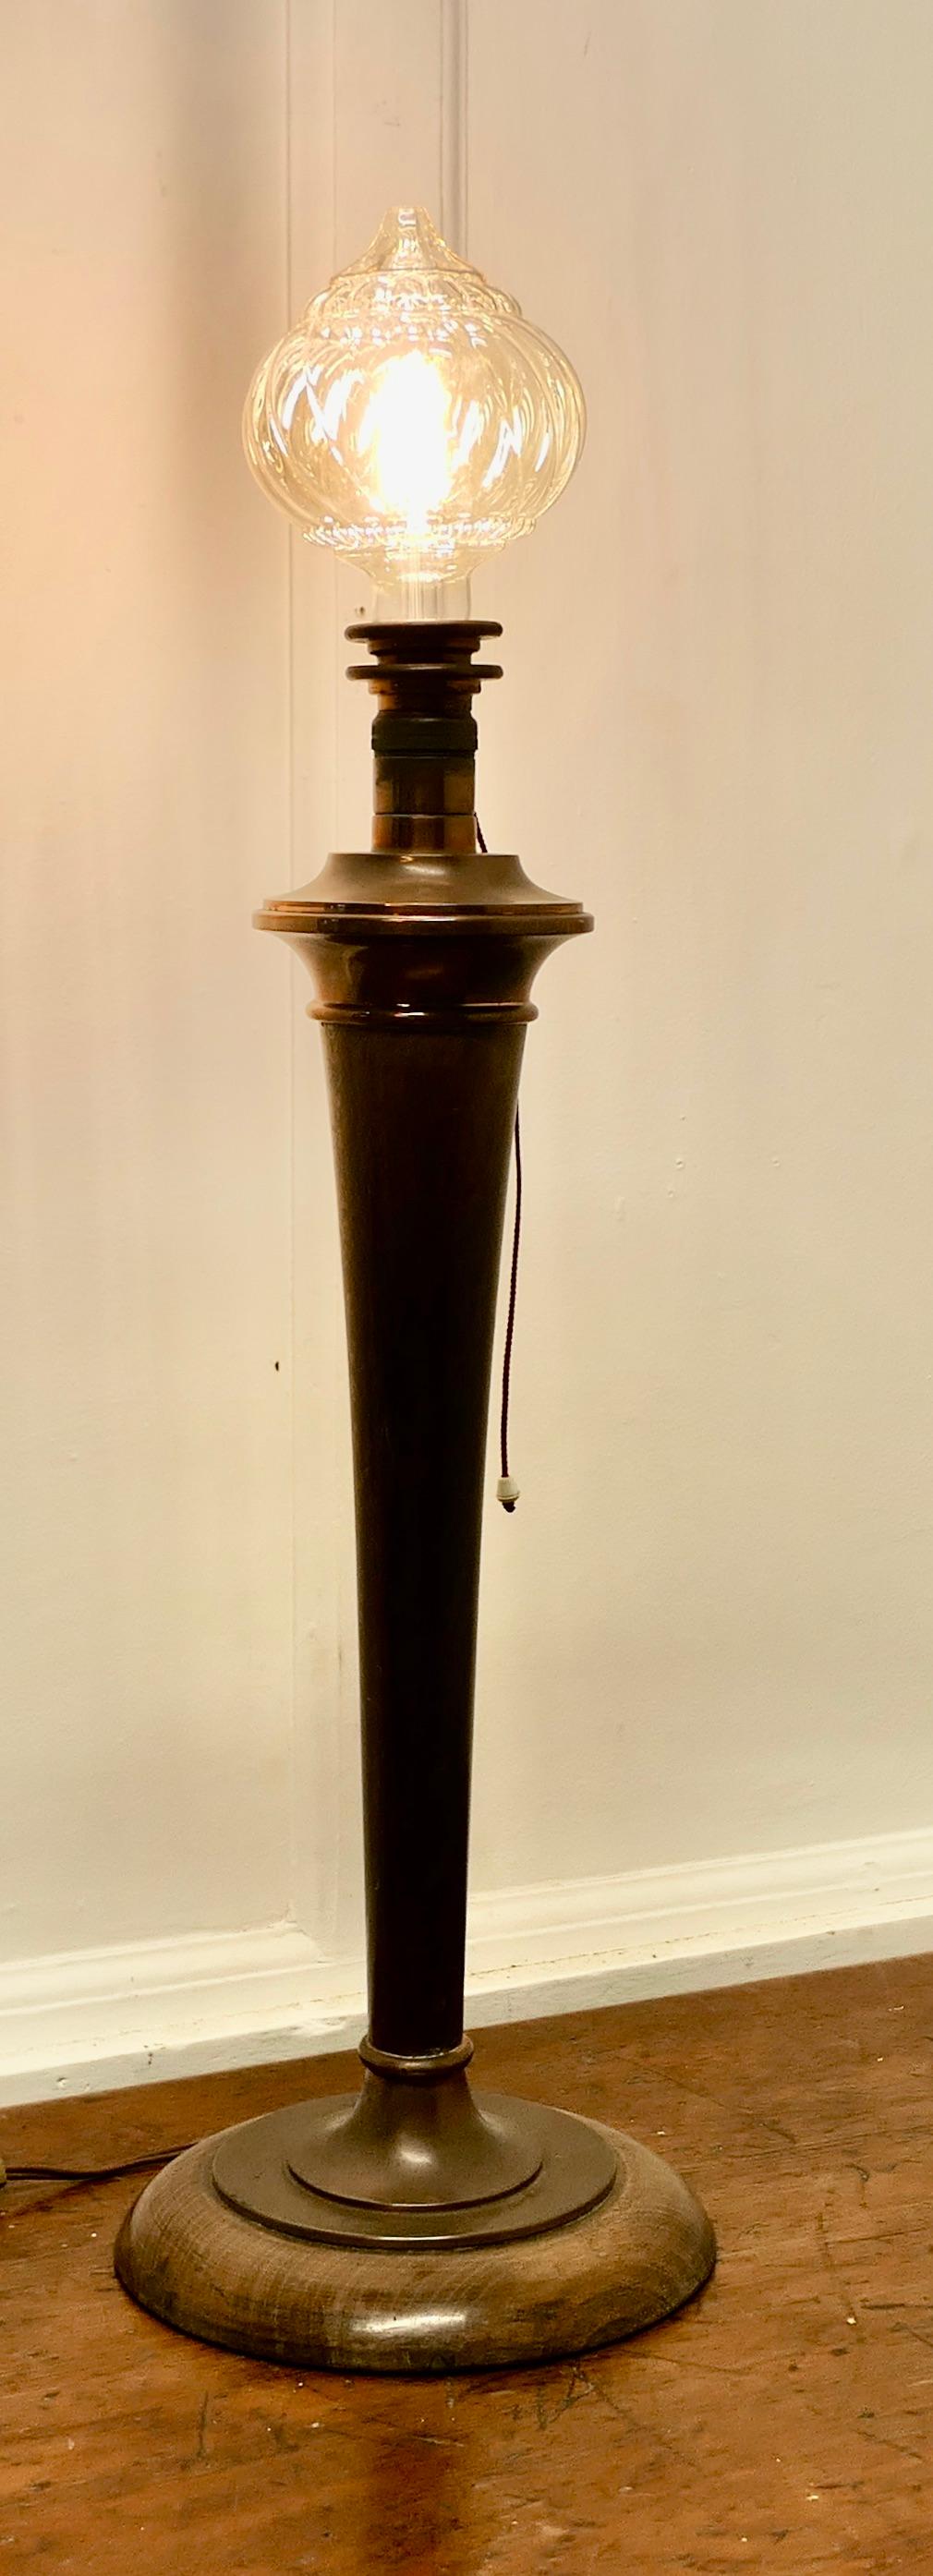 Hohe Art Deco Tischlampe aus Nussbaum und Kupfer

Dies ist  eine sehr attraktive Tischlampe aus den 1920er Jahren, die mit einer modernen Big Globe Crystal Light Glühbirne, die mit der Lampe enthalten ist, auf den neuesten Stand gebracht wurde, die